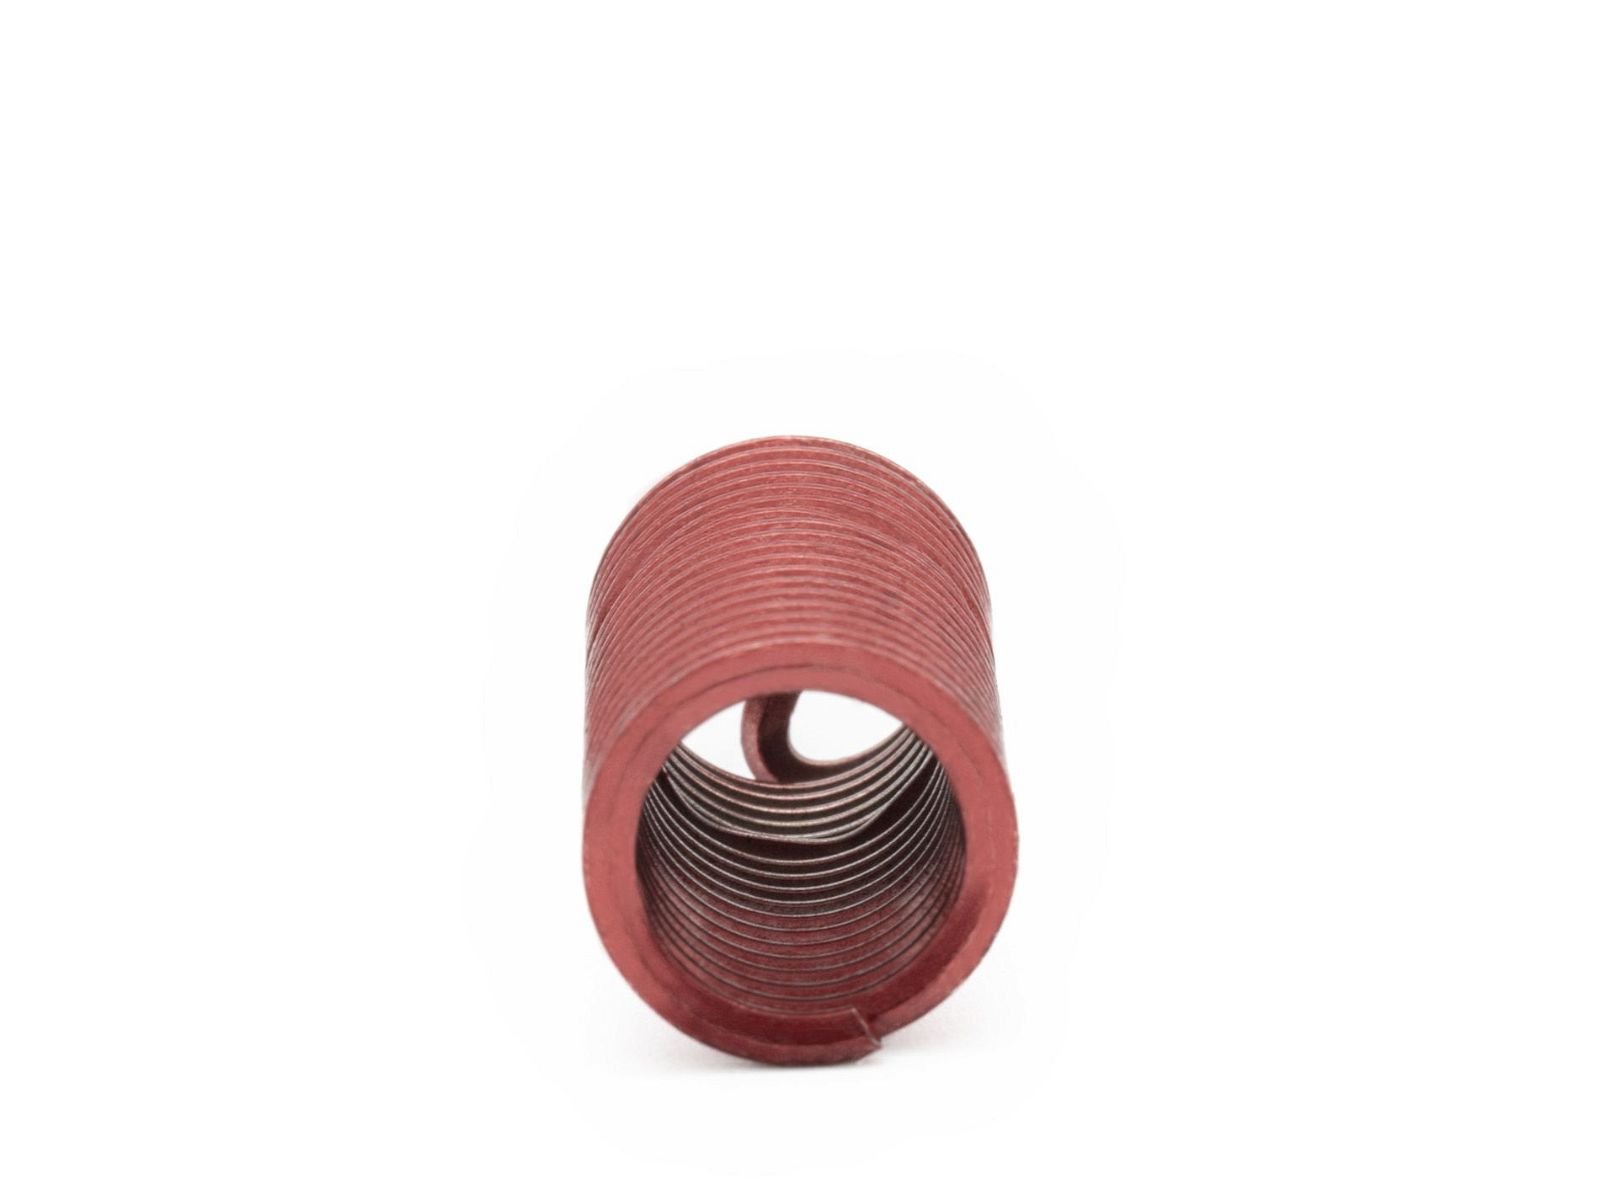 BaerCoil Wire Thread Inserts BA 2 - 3.0 D (14.1 mm) - screw grip (screw locking) - 100 pcs.